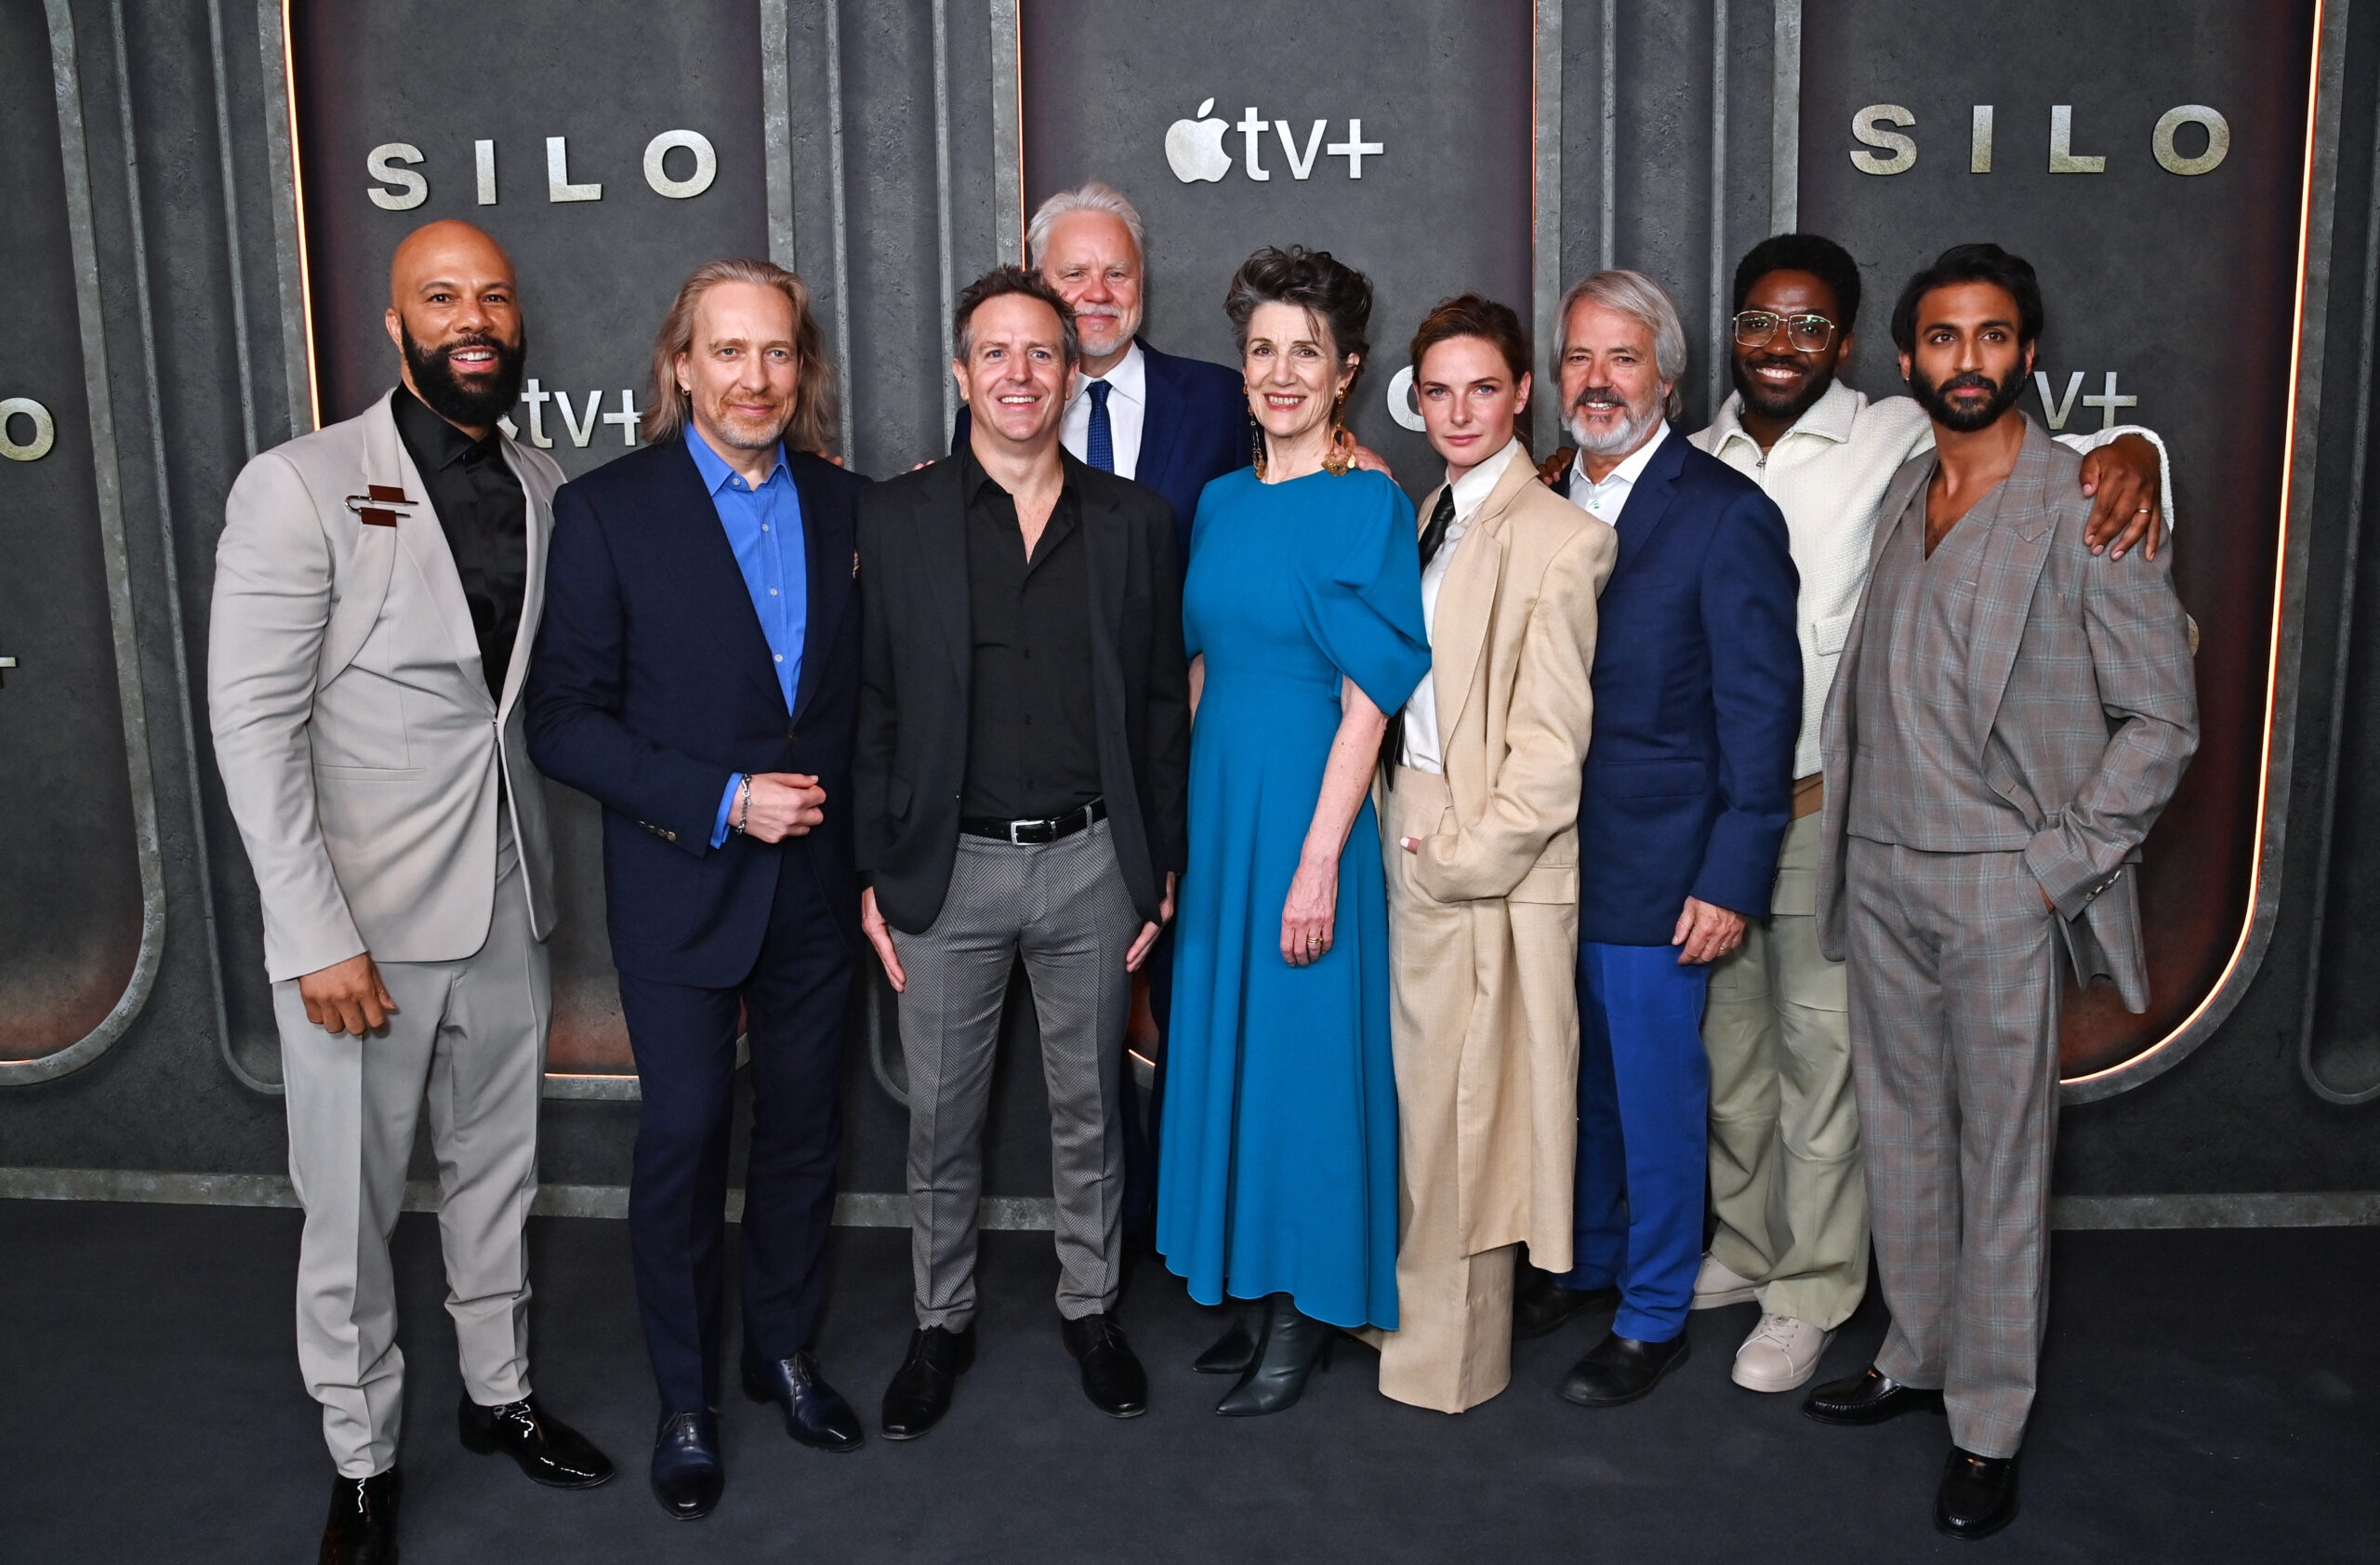 silo season 2 cast